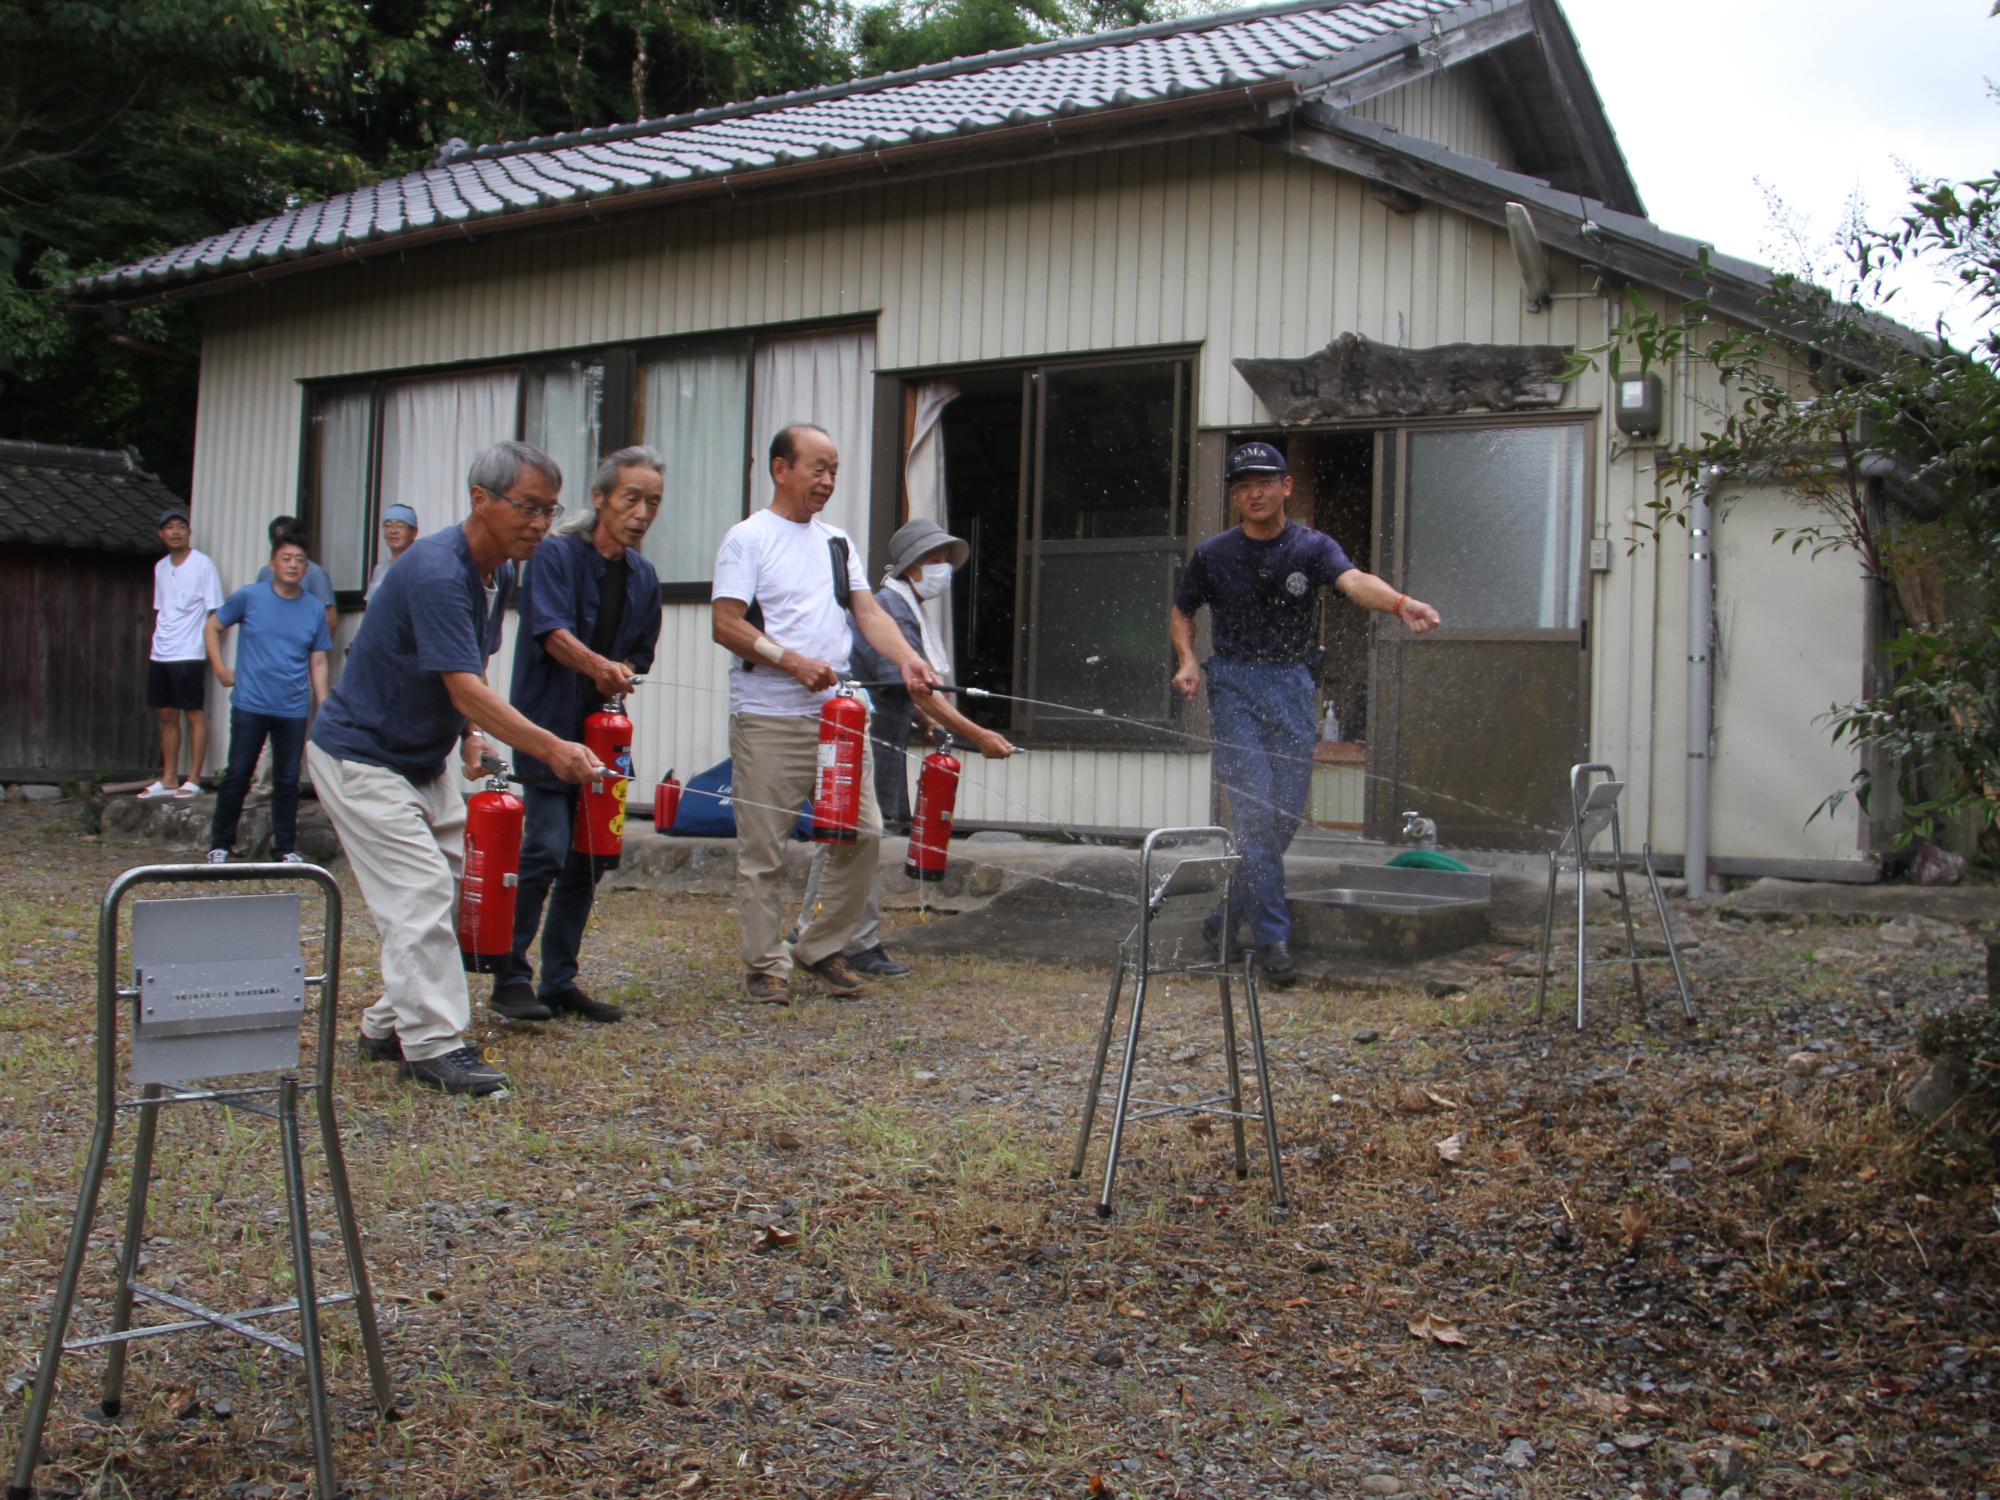 相馬消防署署員の指導のもと、水消火器を使用した初期消火訓練をする住民らの様子